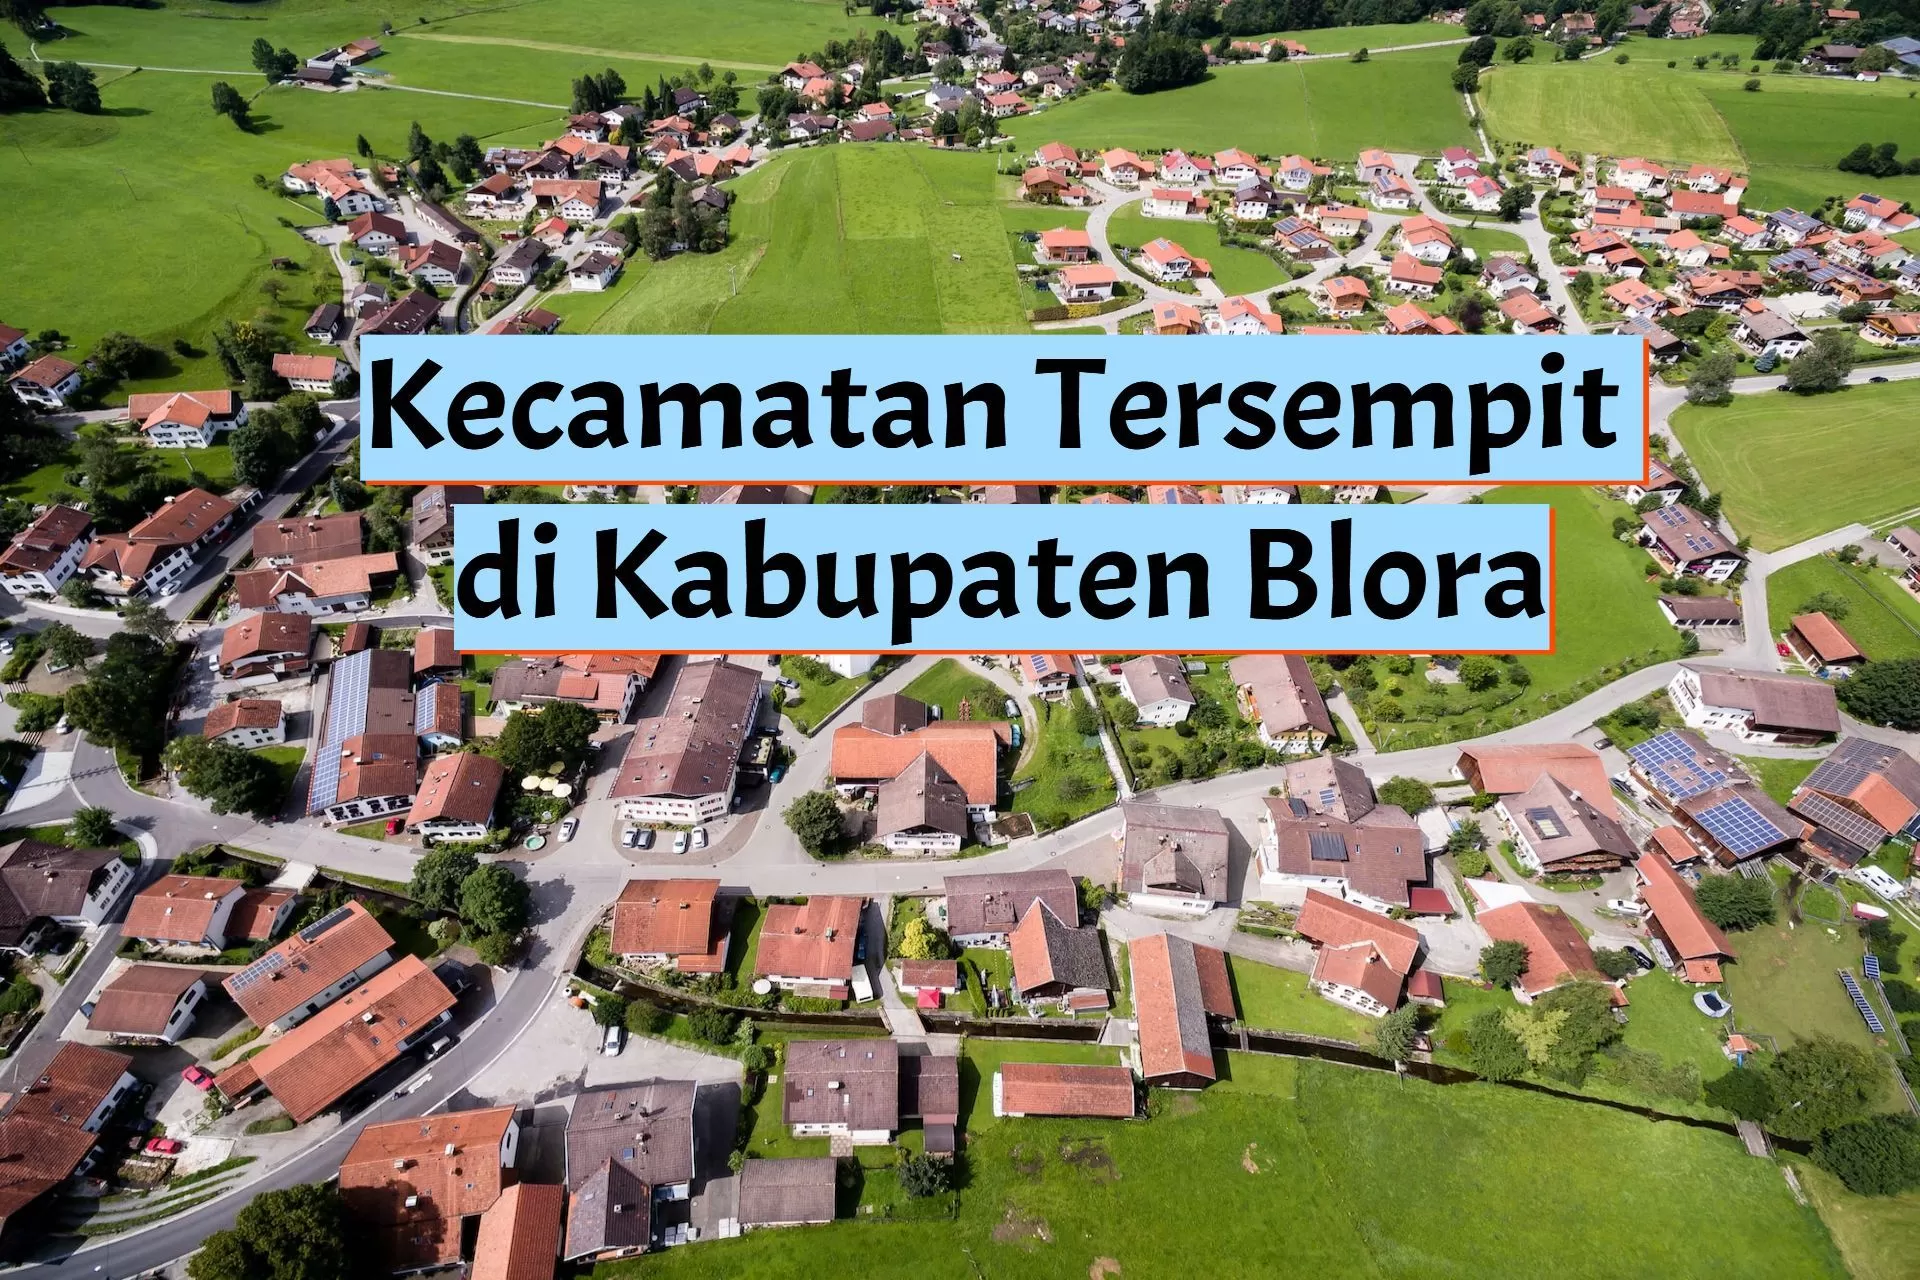 4 Kecamatan Tersempit di Kabupaten Blora, Warga Tak Menyangka Nomor Satu Bukan Bogorejo, tapi...